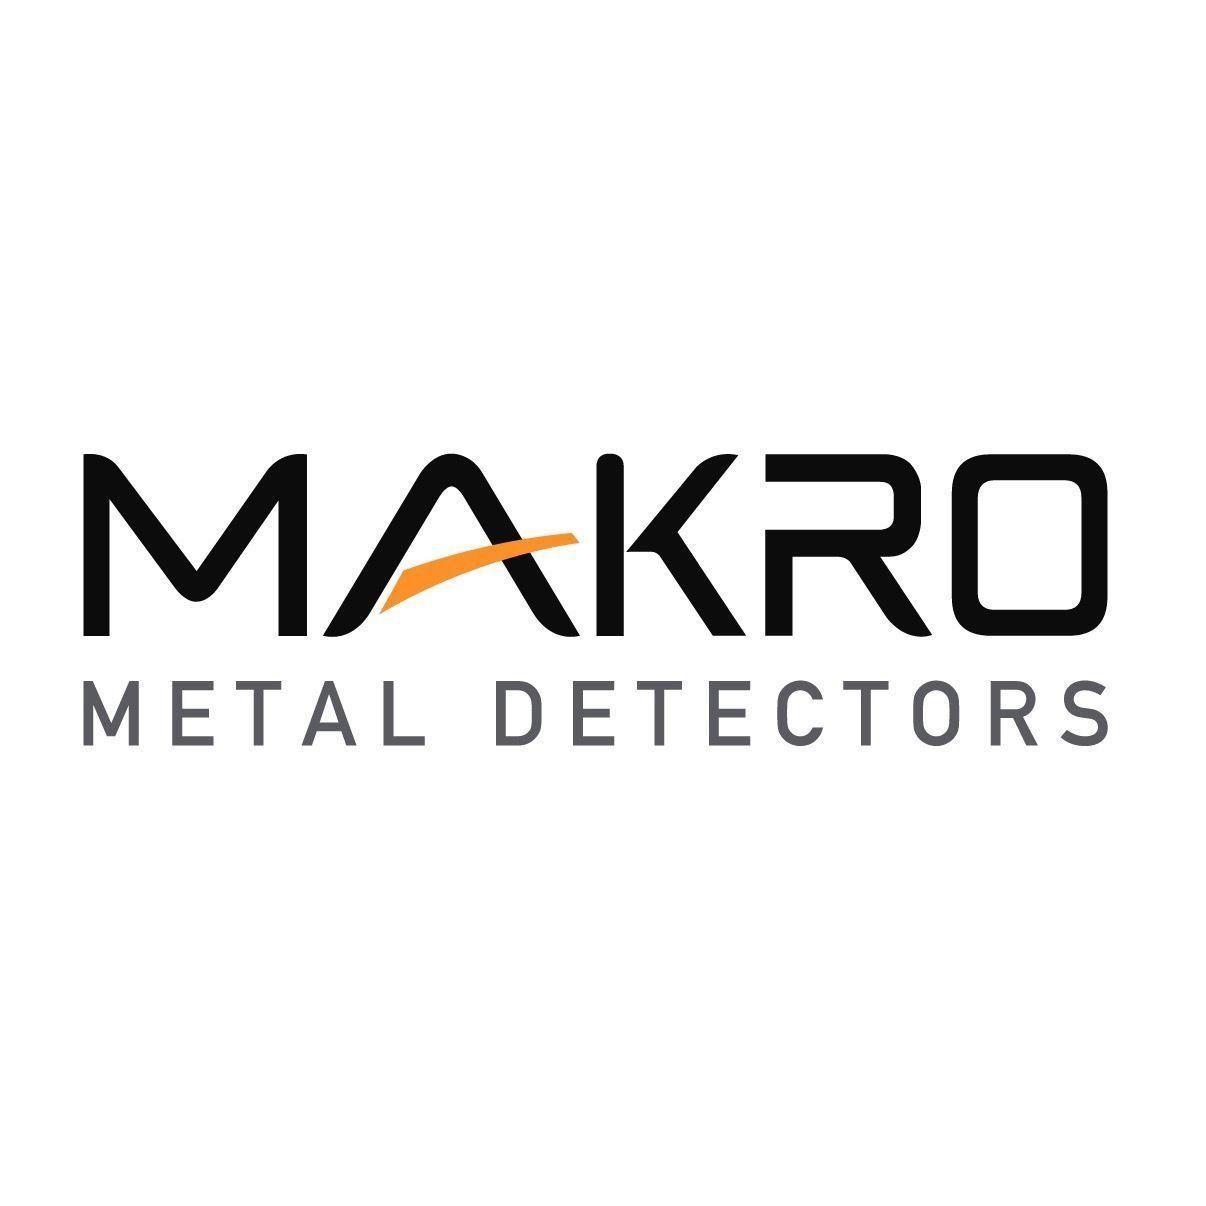 Makro Logo - Amazon.com : Makro Black Baseball Cap with Official Makro Logo ...